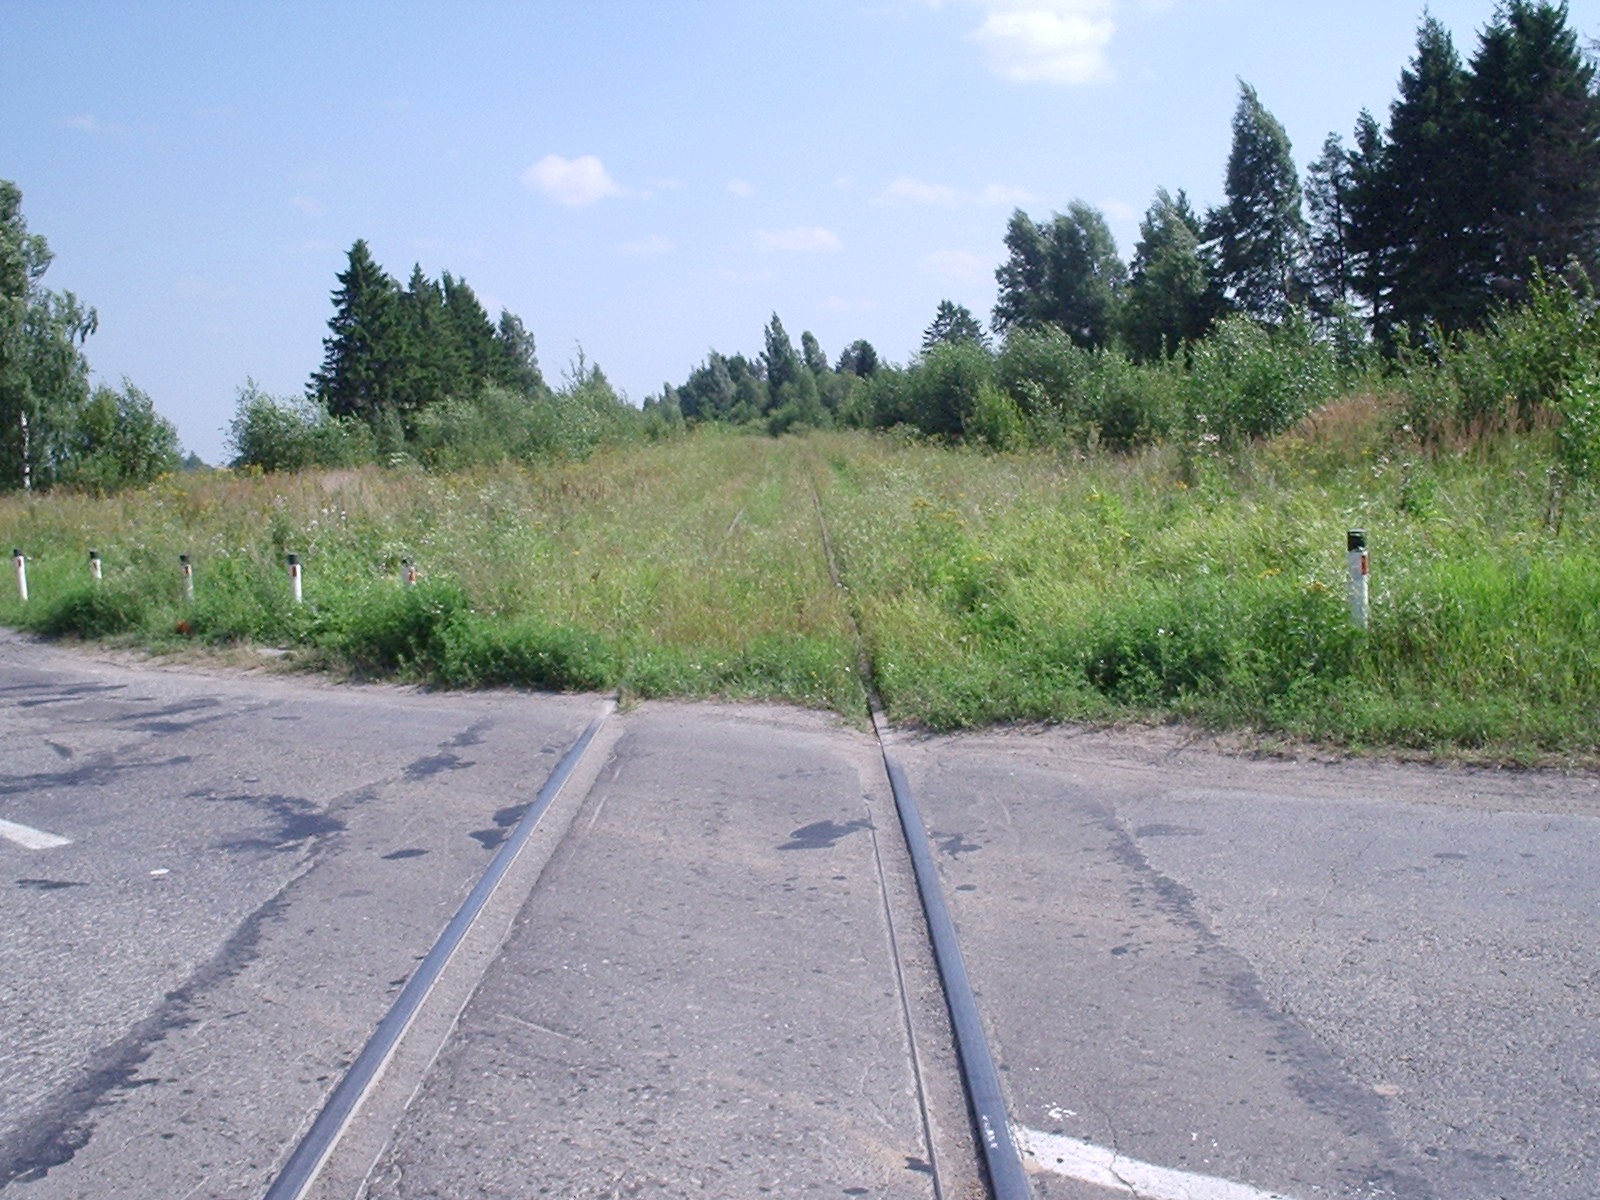 Железнодорожная линия Филино - Красный Профинтерн - фотографии, сделанные в 2005 году (часть 2)